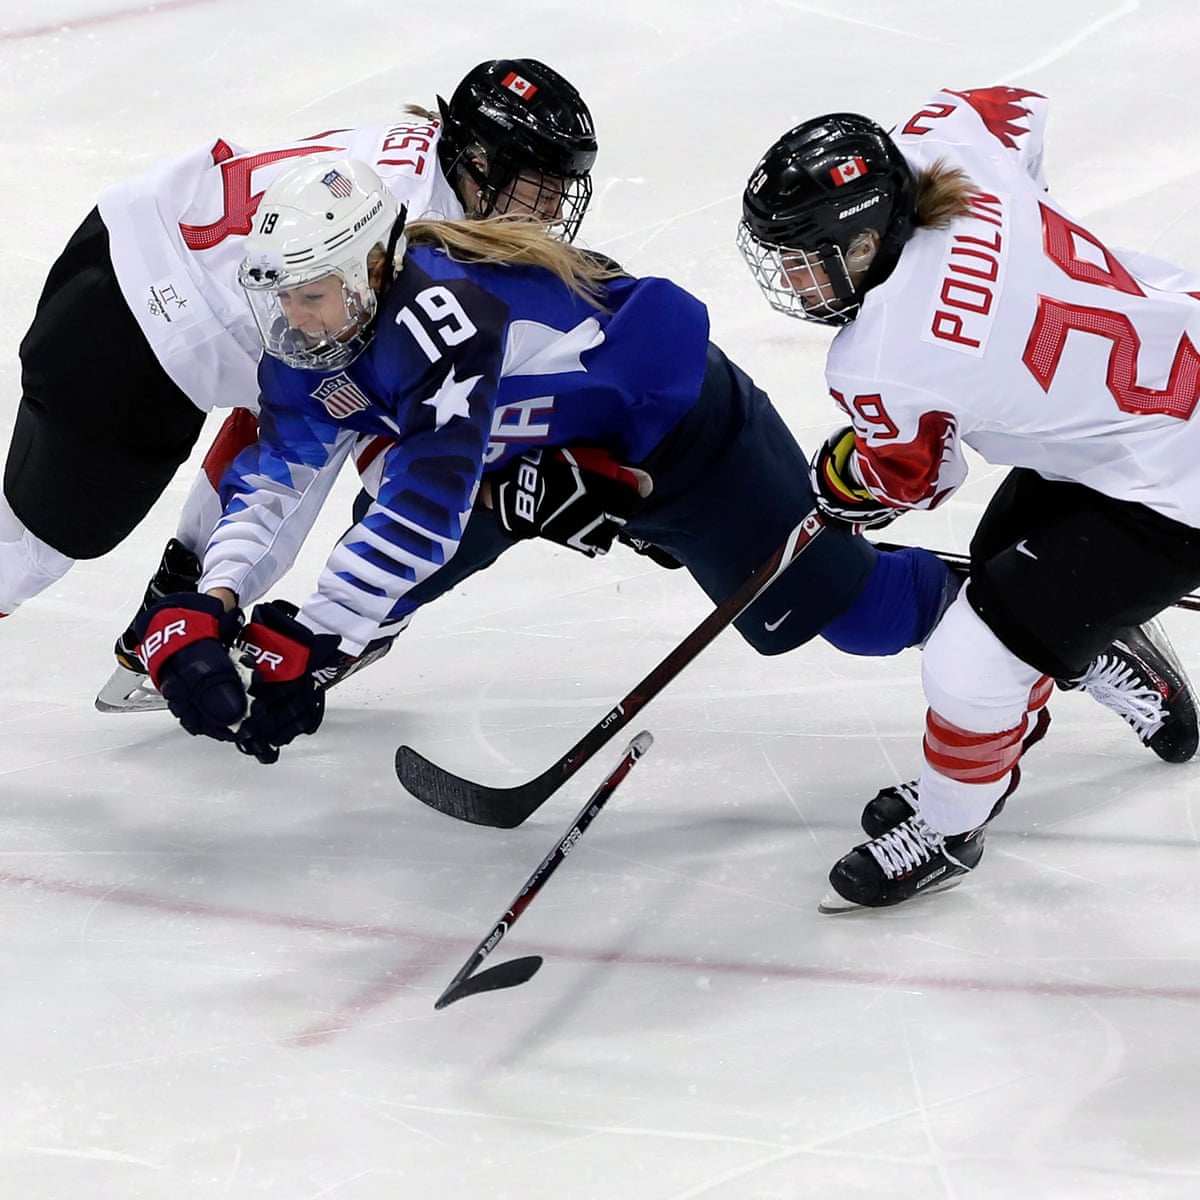 Néhány héttel a kezdés előtt törölték a női jégkorong-világbajnokságot